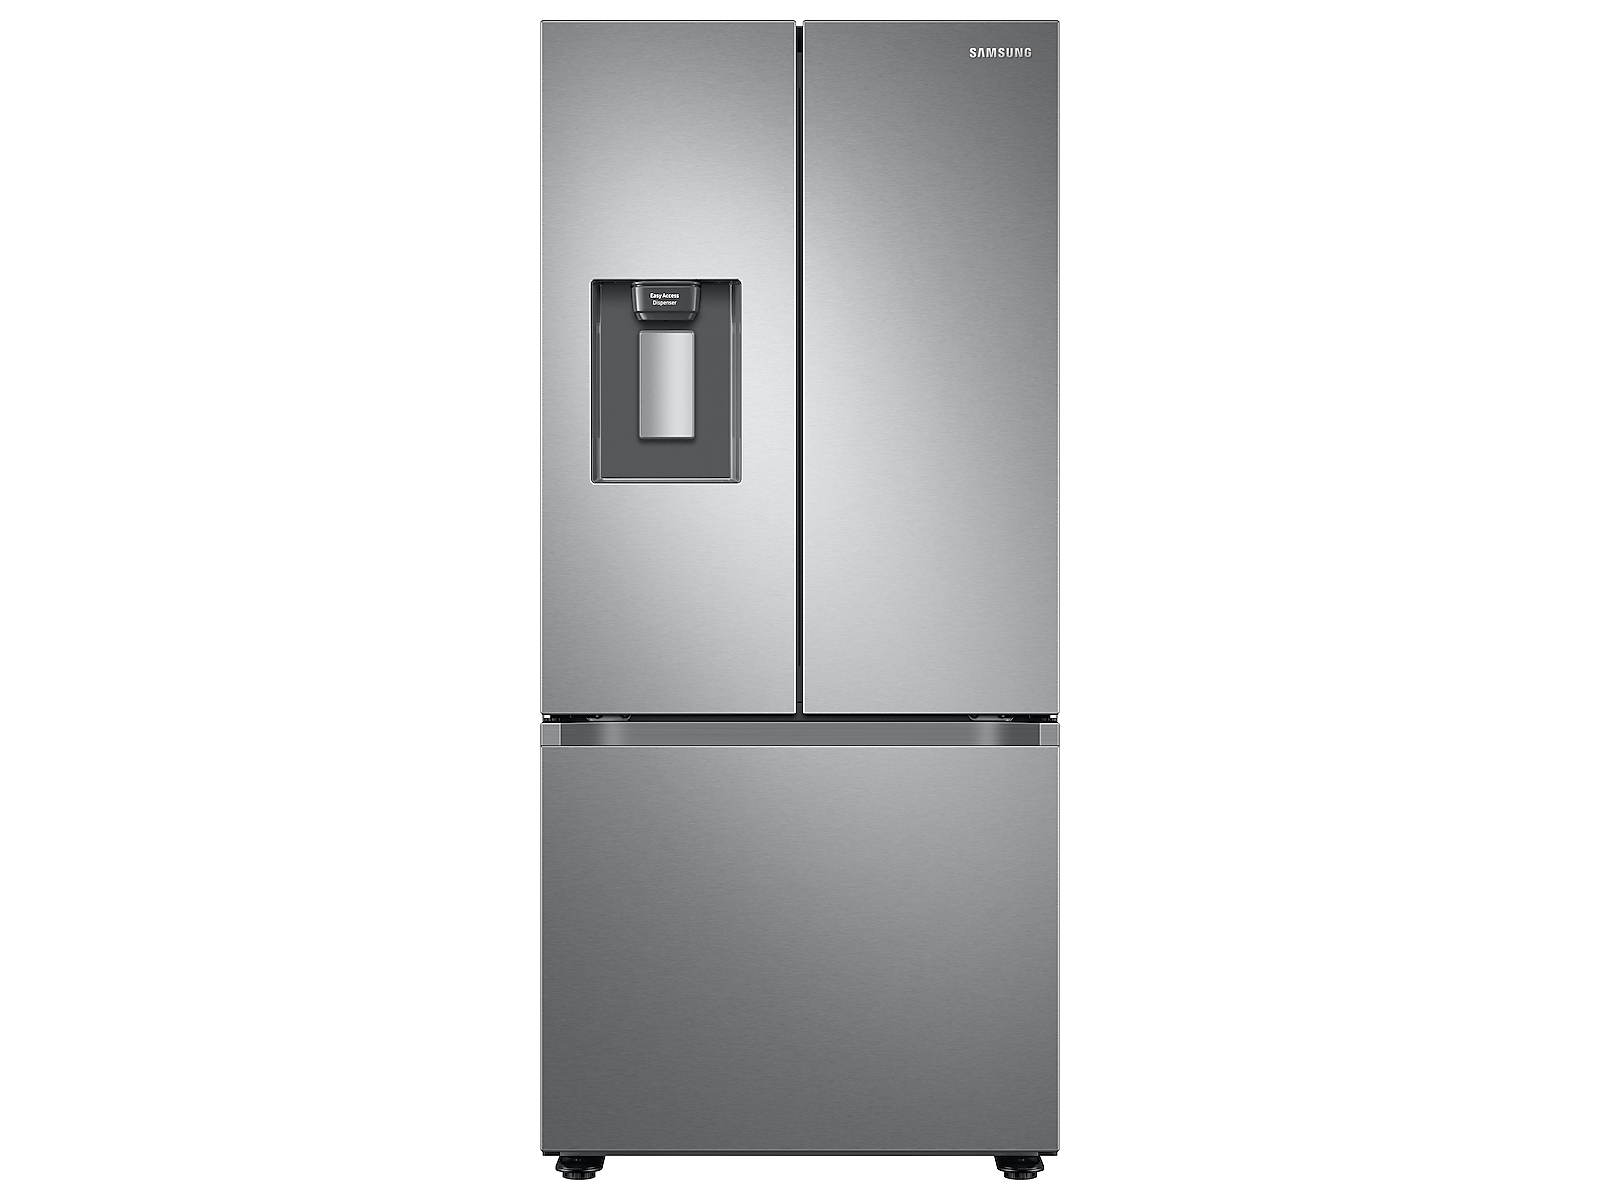 Samsung 22 cu. ft. Smart 3-Door French Door Refrigerator with External Water Dispenser in Silver(RF22A4221SR/AA) photo